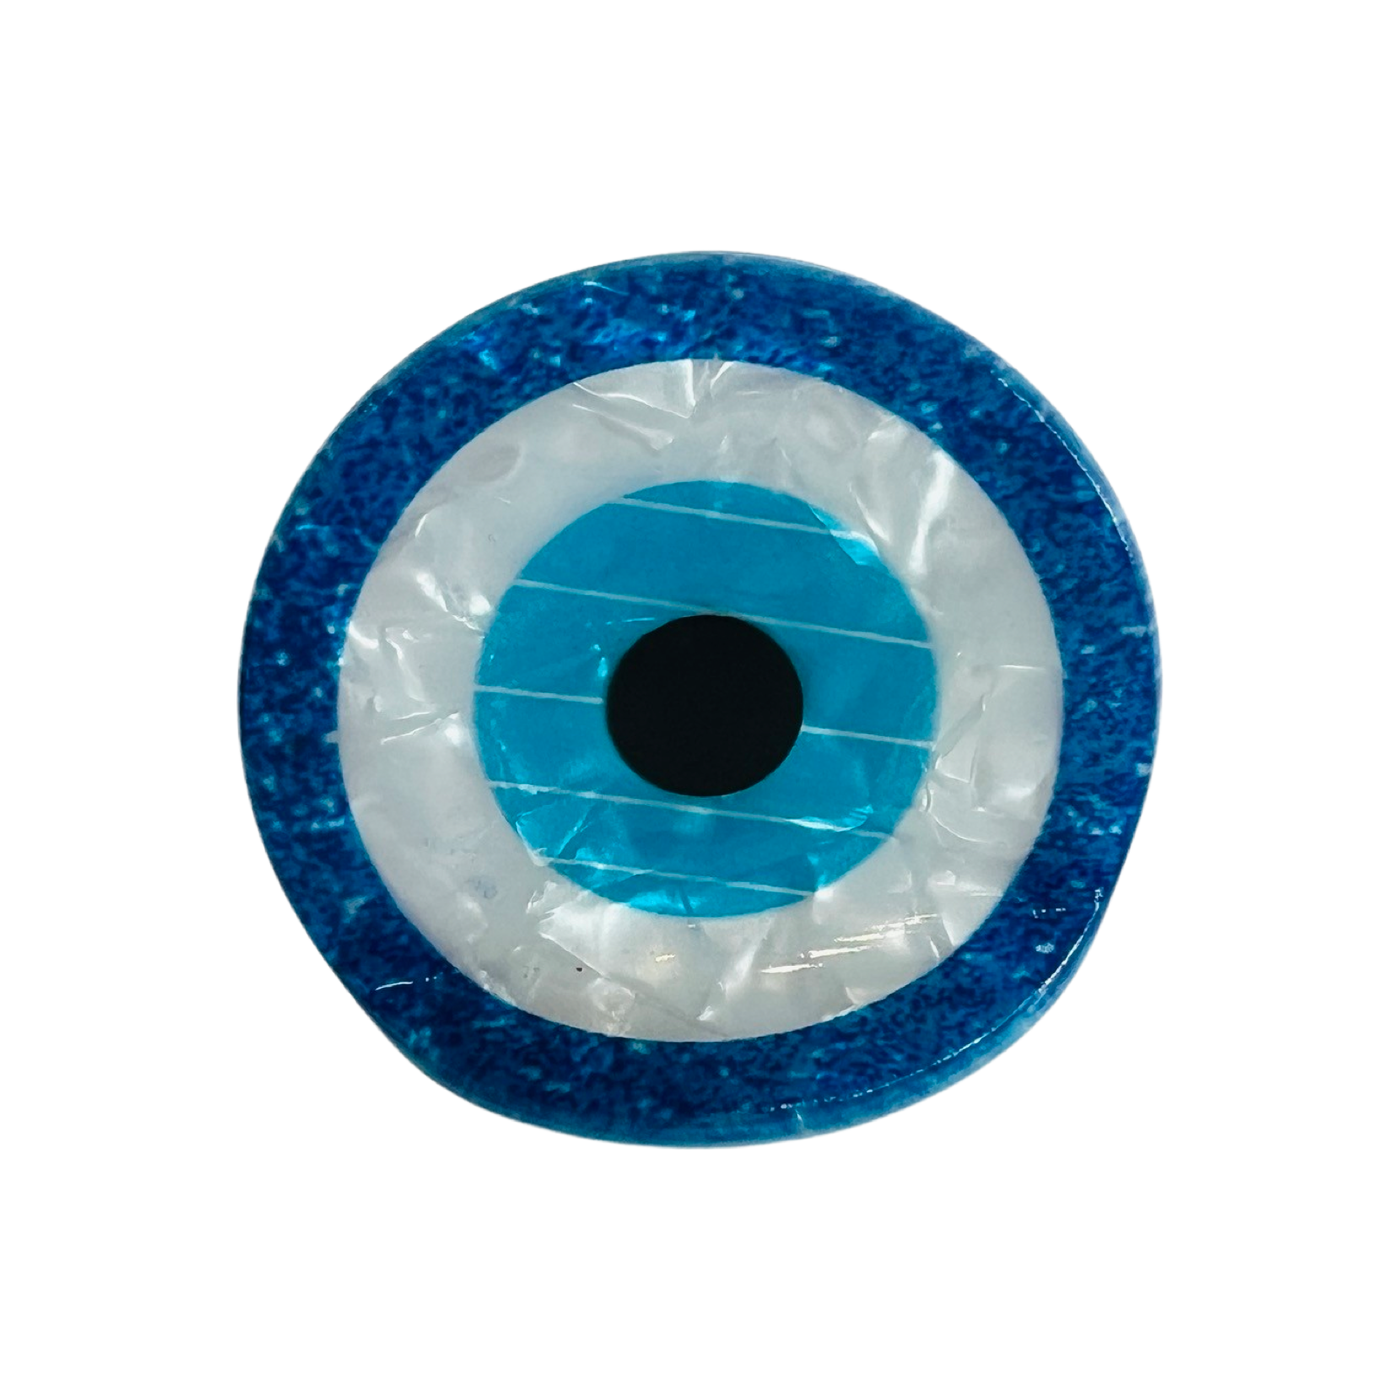 blue and white acrylic eyil eye hair clip